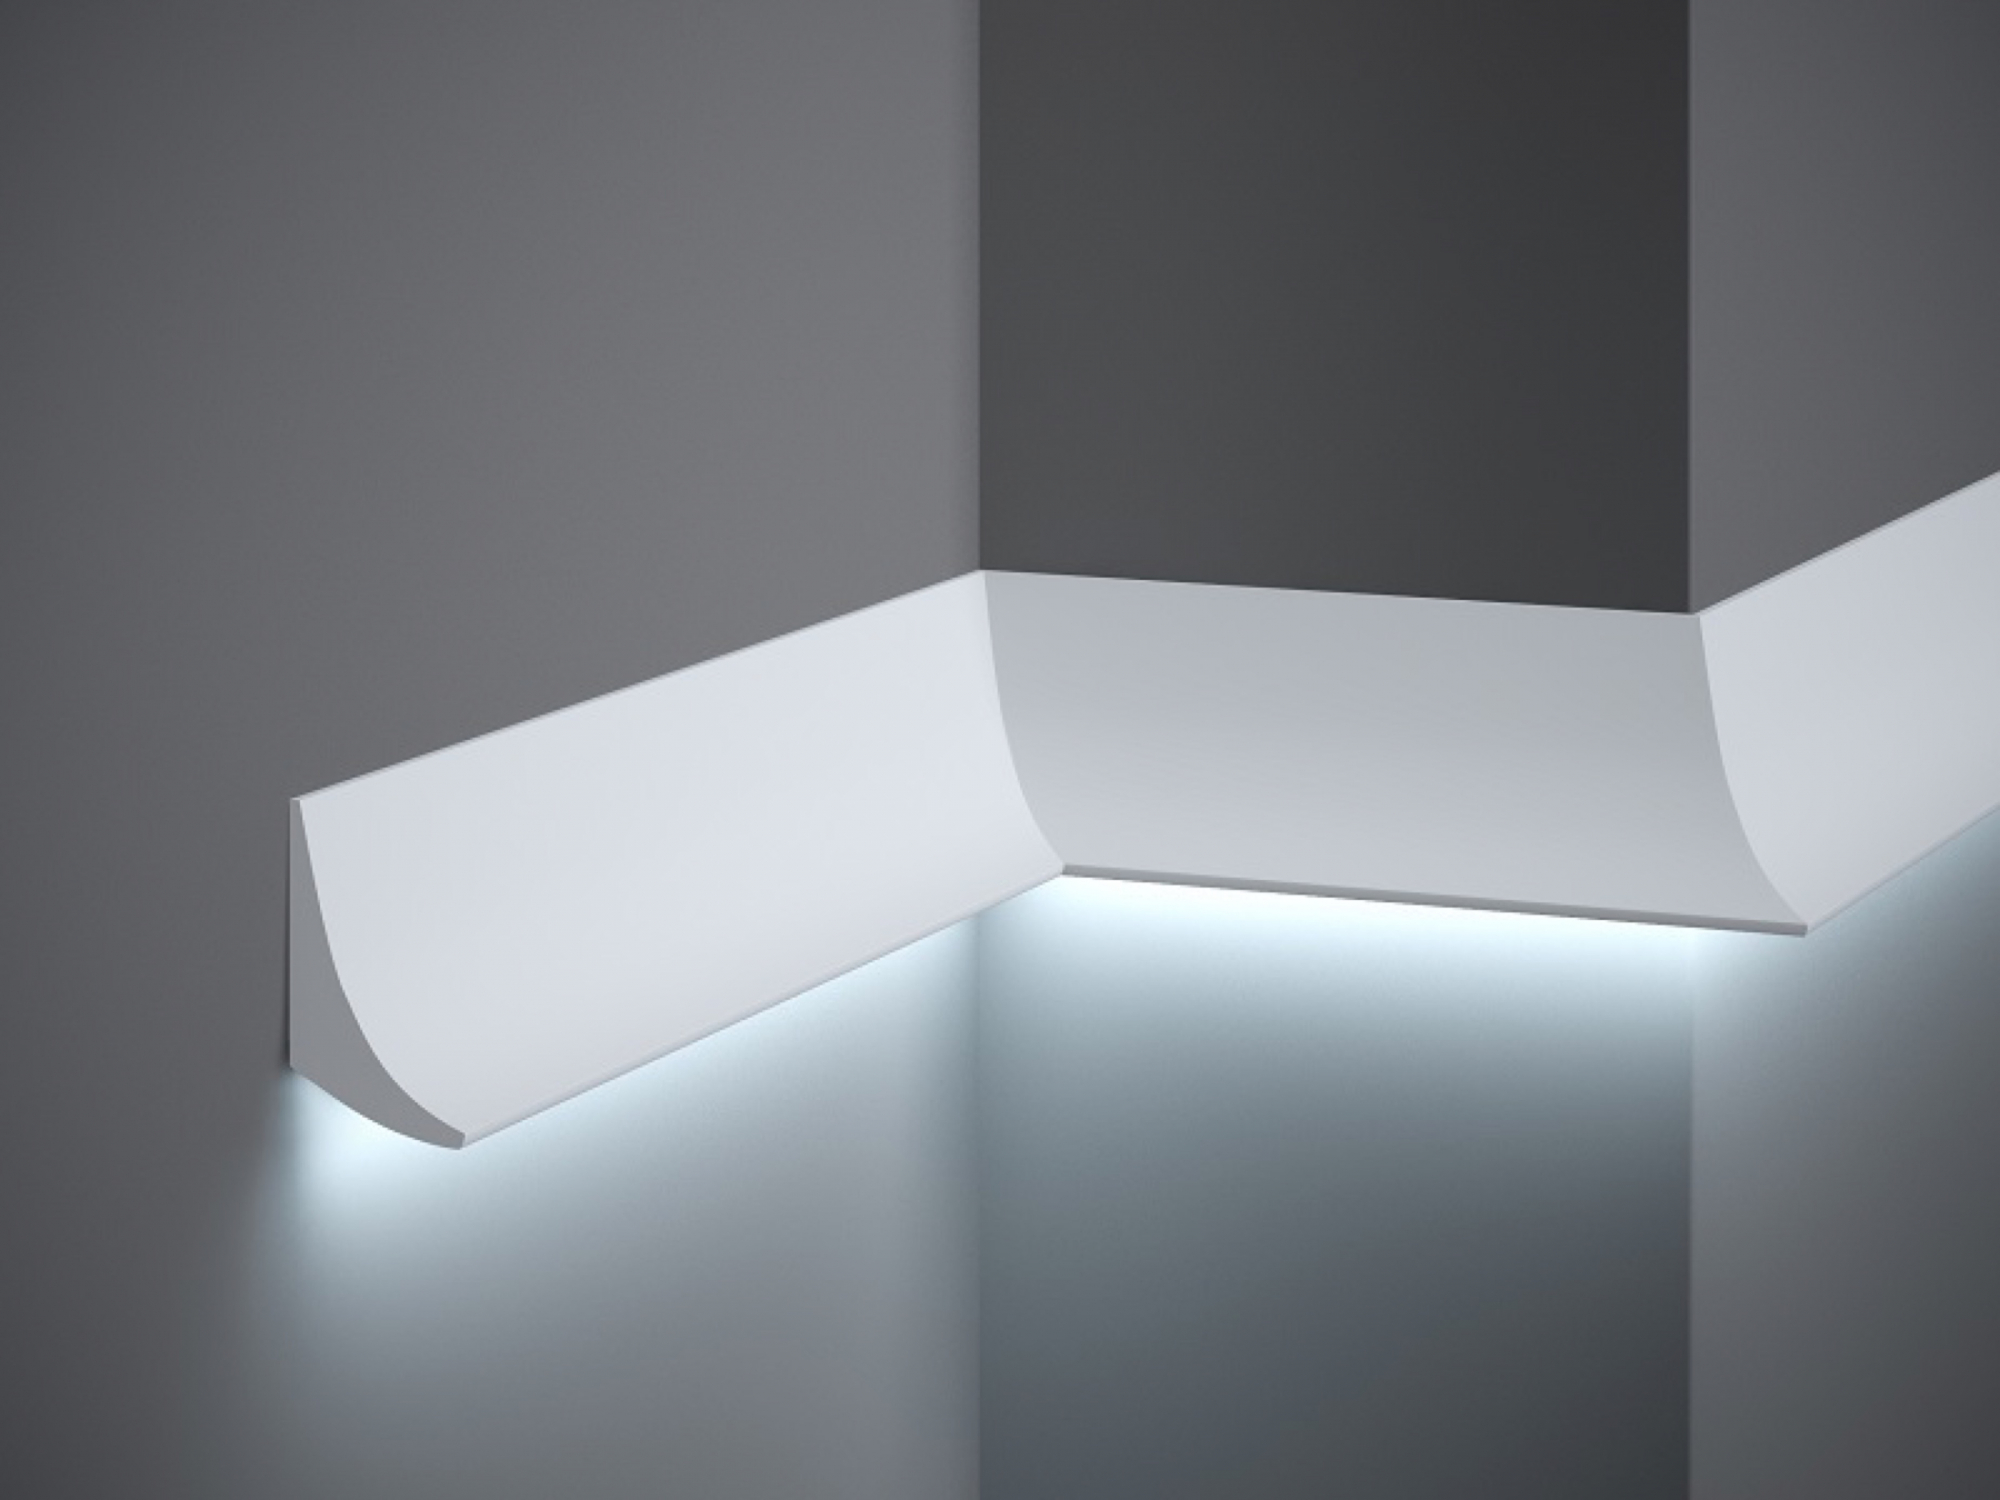 Minimalistisk vægliste til LED lys Køb stukliste til med LEDlys